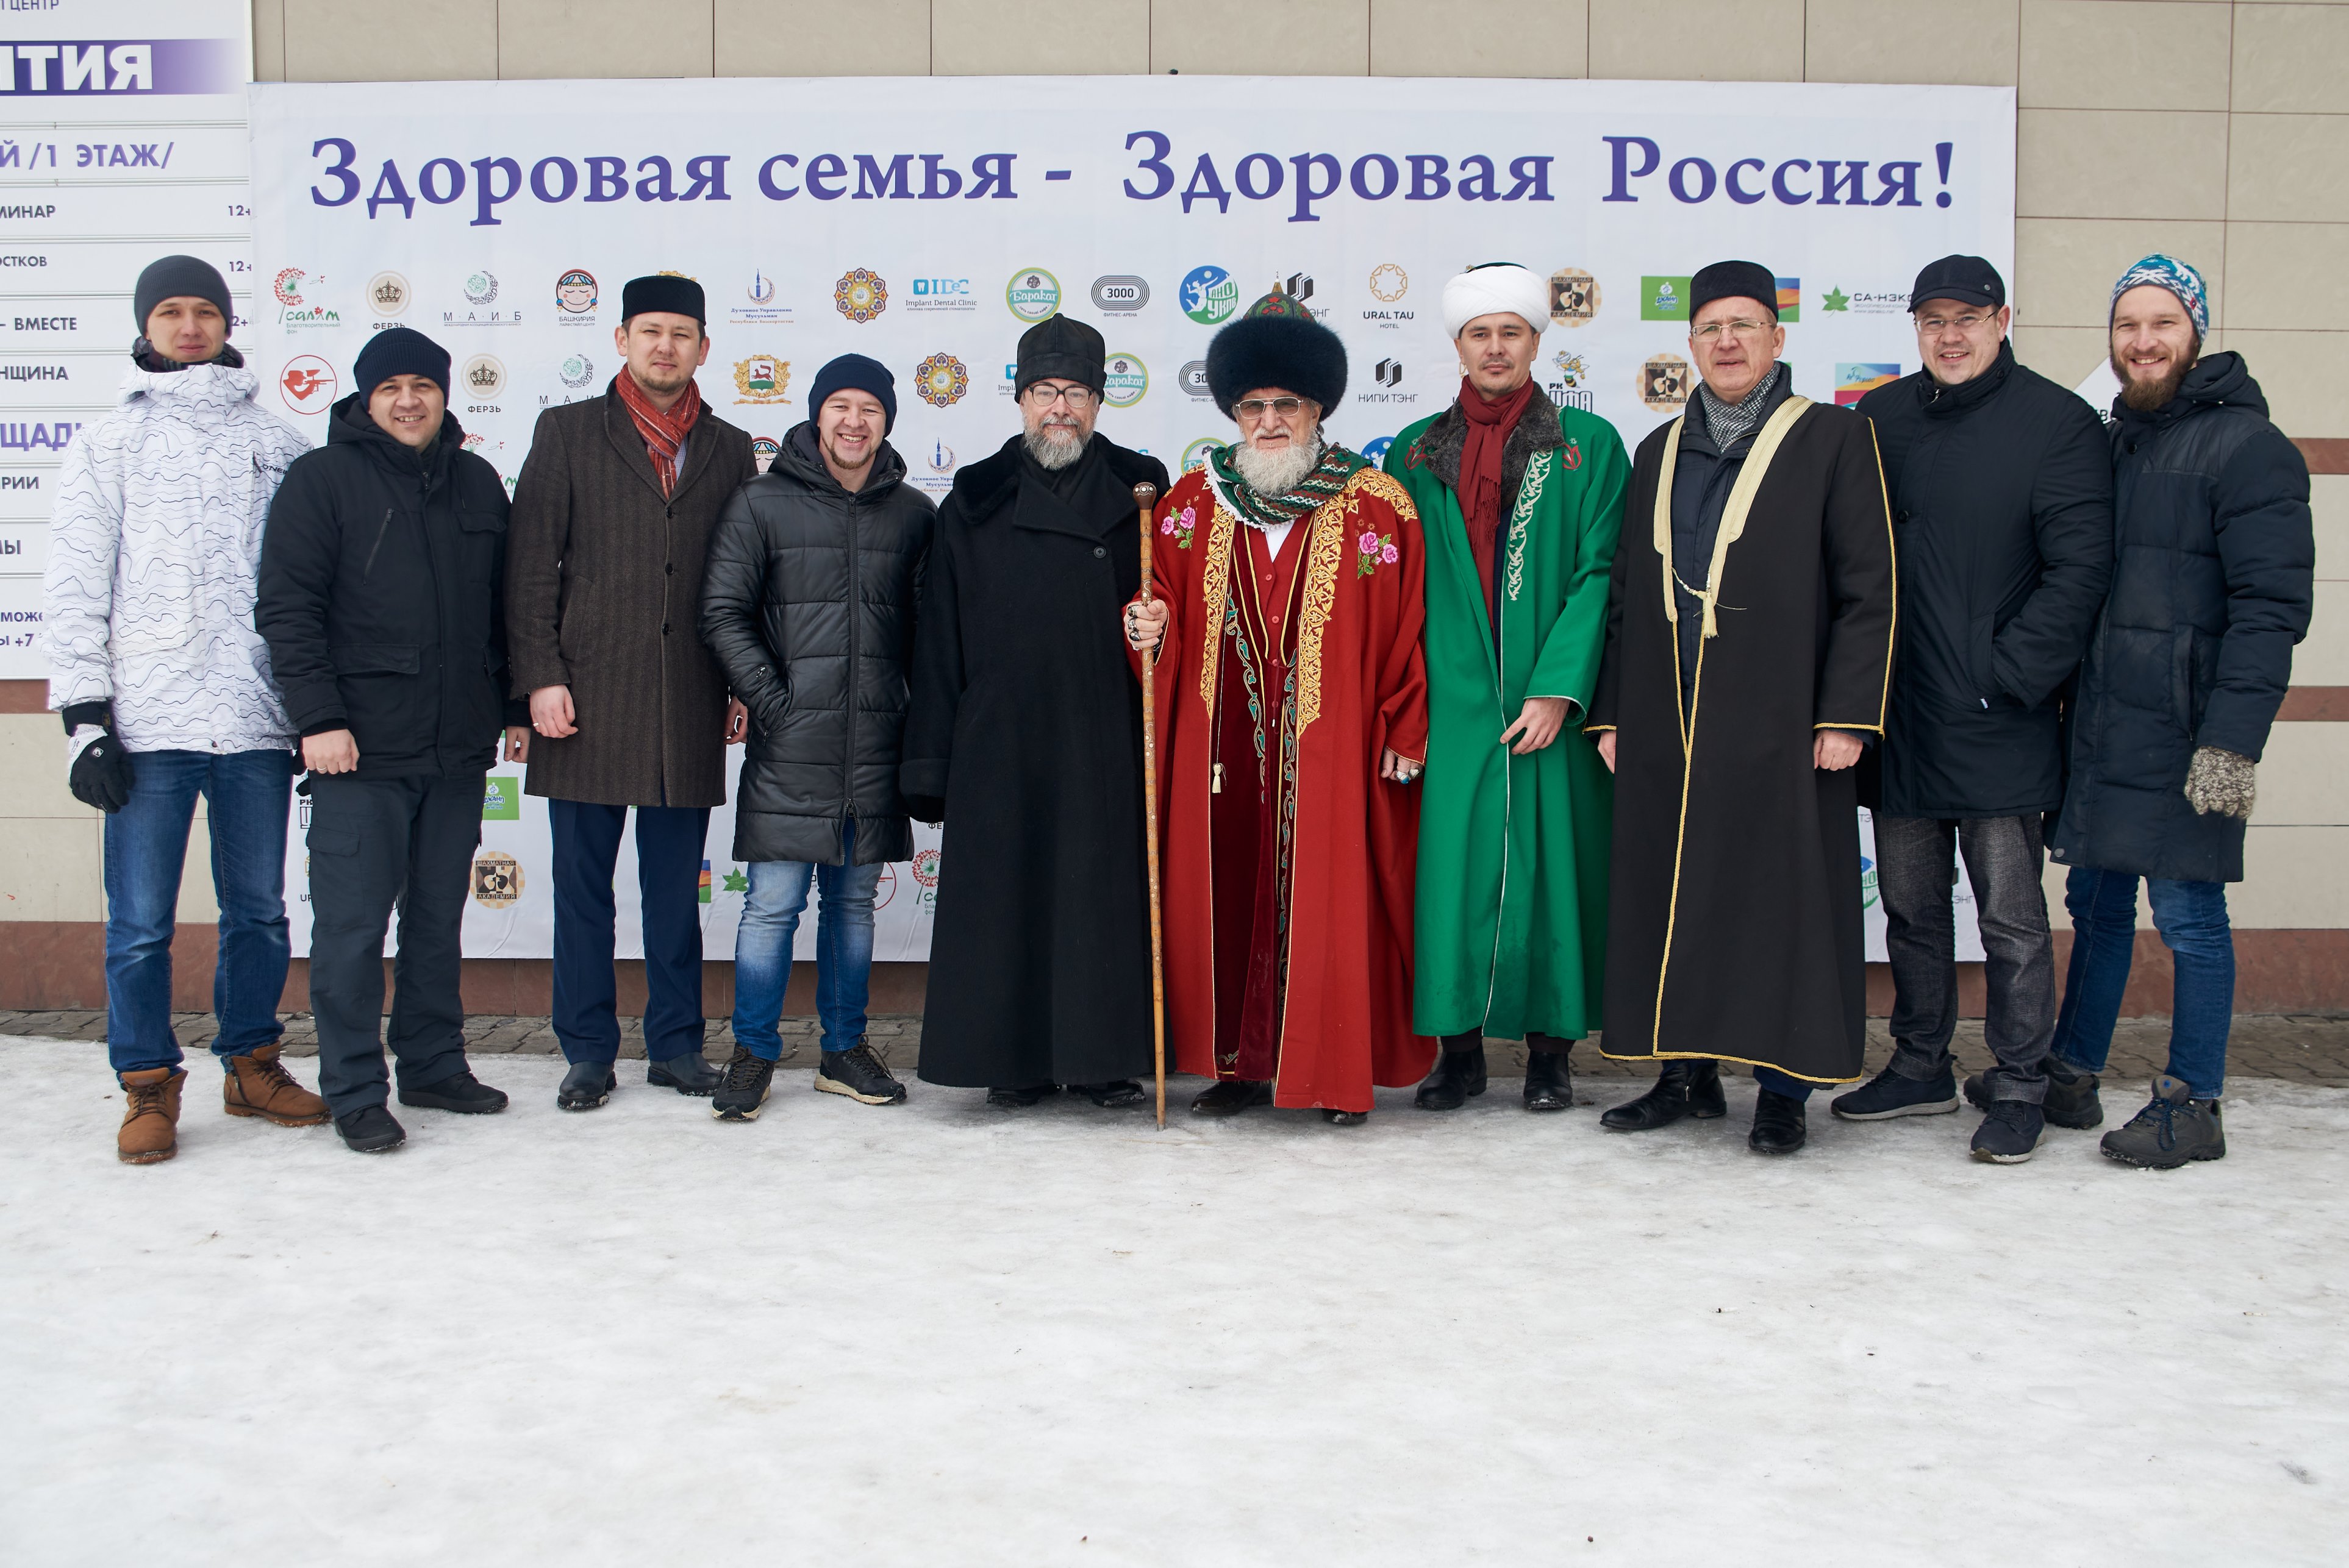 В Уфе прошел фестиваль «Здоровая семья – здоровая Россия!»